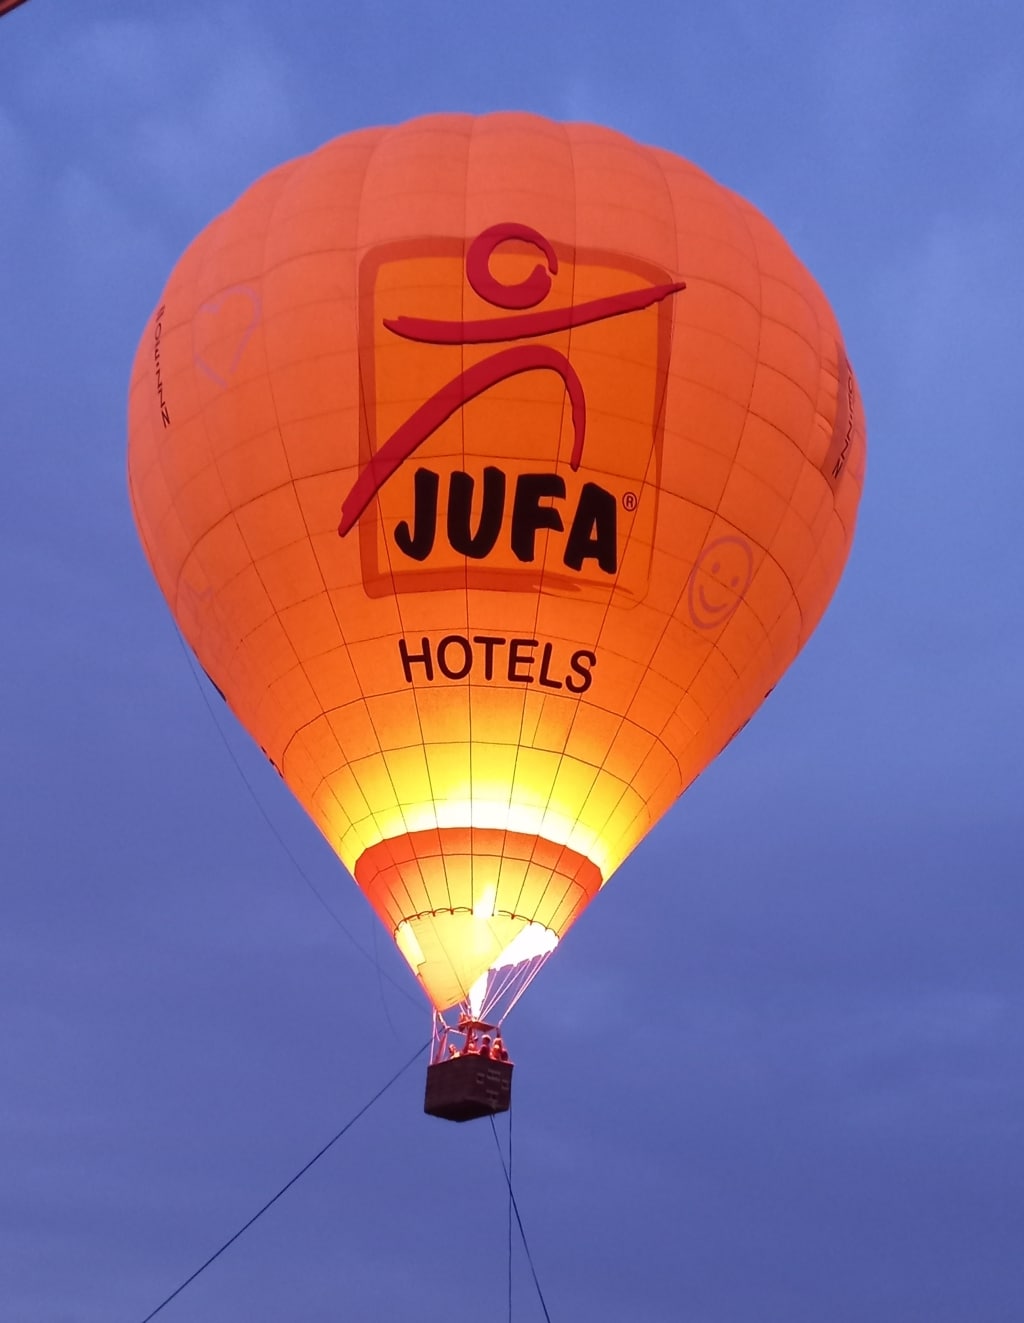 Ein an der Erde festgebundener Heißluftballon, der einige Meter in die Höhe steigt